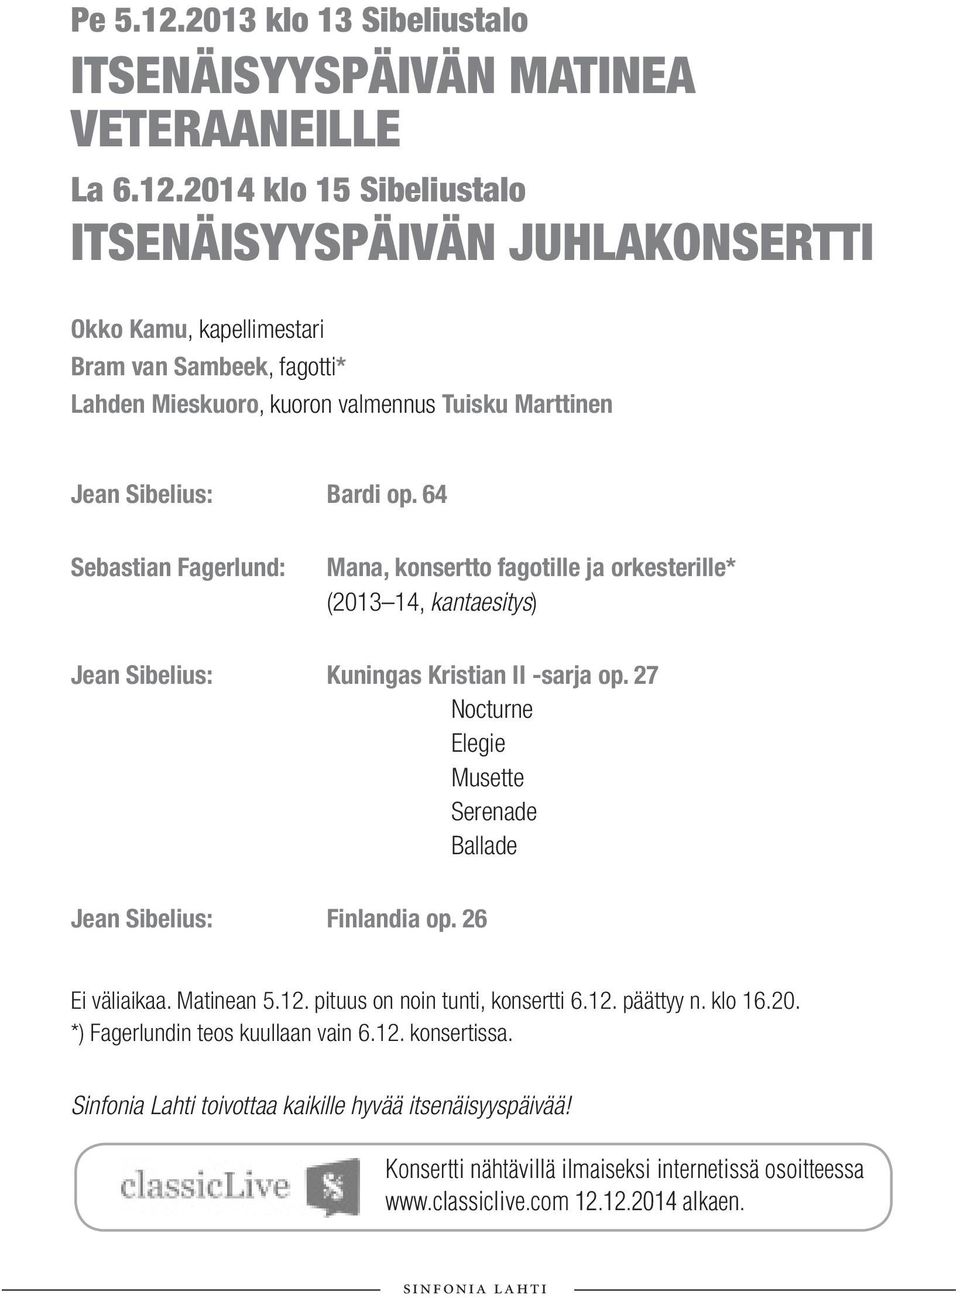 27 Nocturne Elegie Musette Serenade Ballade Jean Sibelius: Finlandia op. 26 Ei väliaikaa. Matinean 5.12. pituus on noin tunti, konsertti 6.12. päättyy n. klo 16.20.